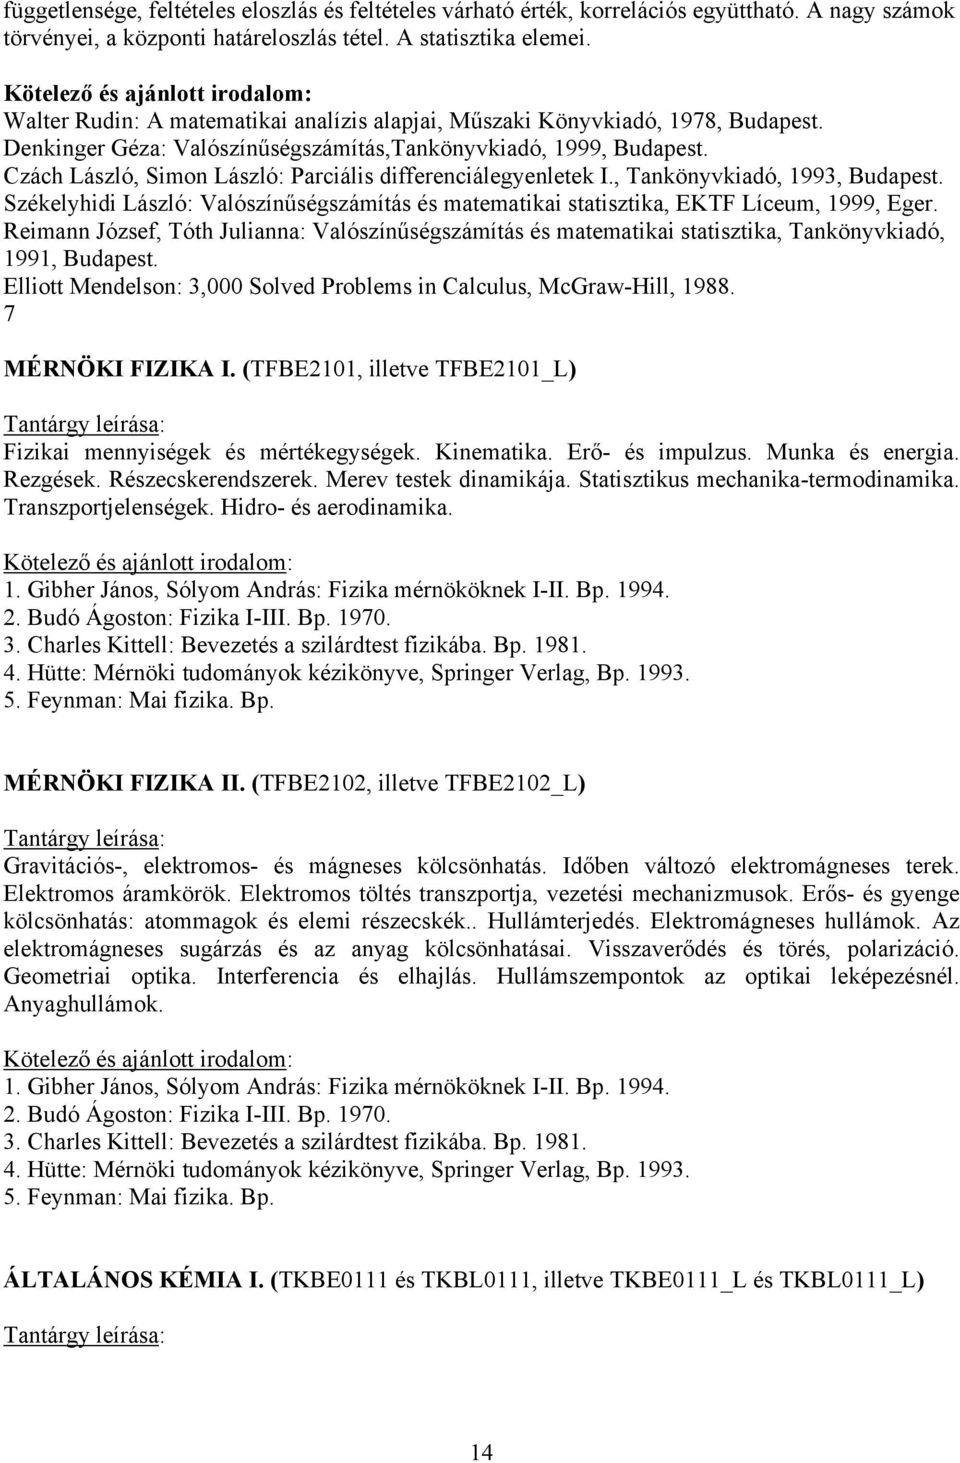 Czách László, Simon László: Parciális differenciálegyenletek I., Tankönyvkiadó, 1993, Budapest. Székelyhidi László: Valószínűségszámítás és matematikai statisztika, EKTF Líceum, 1999, Eger.